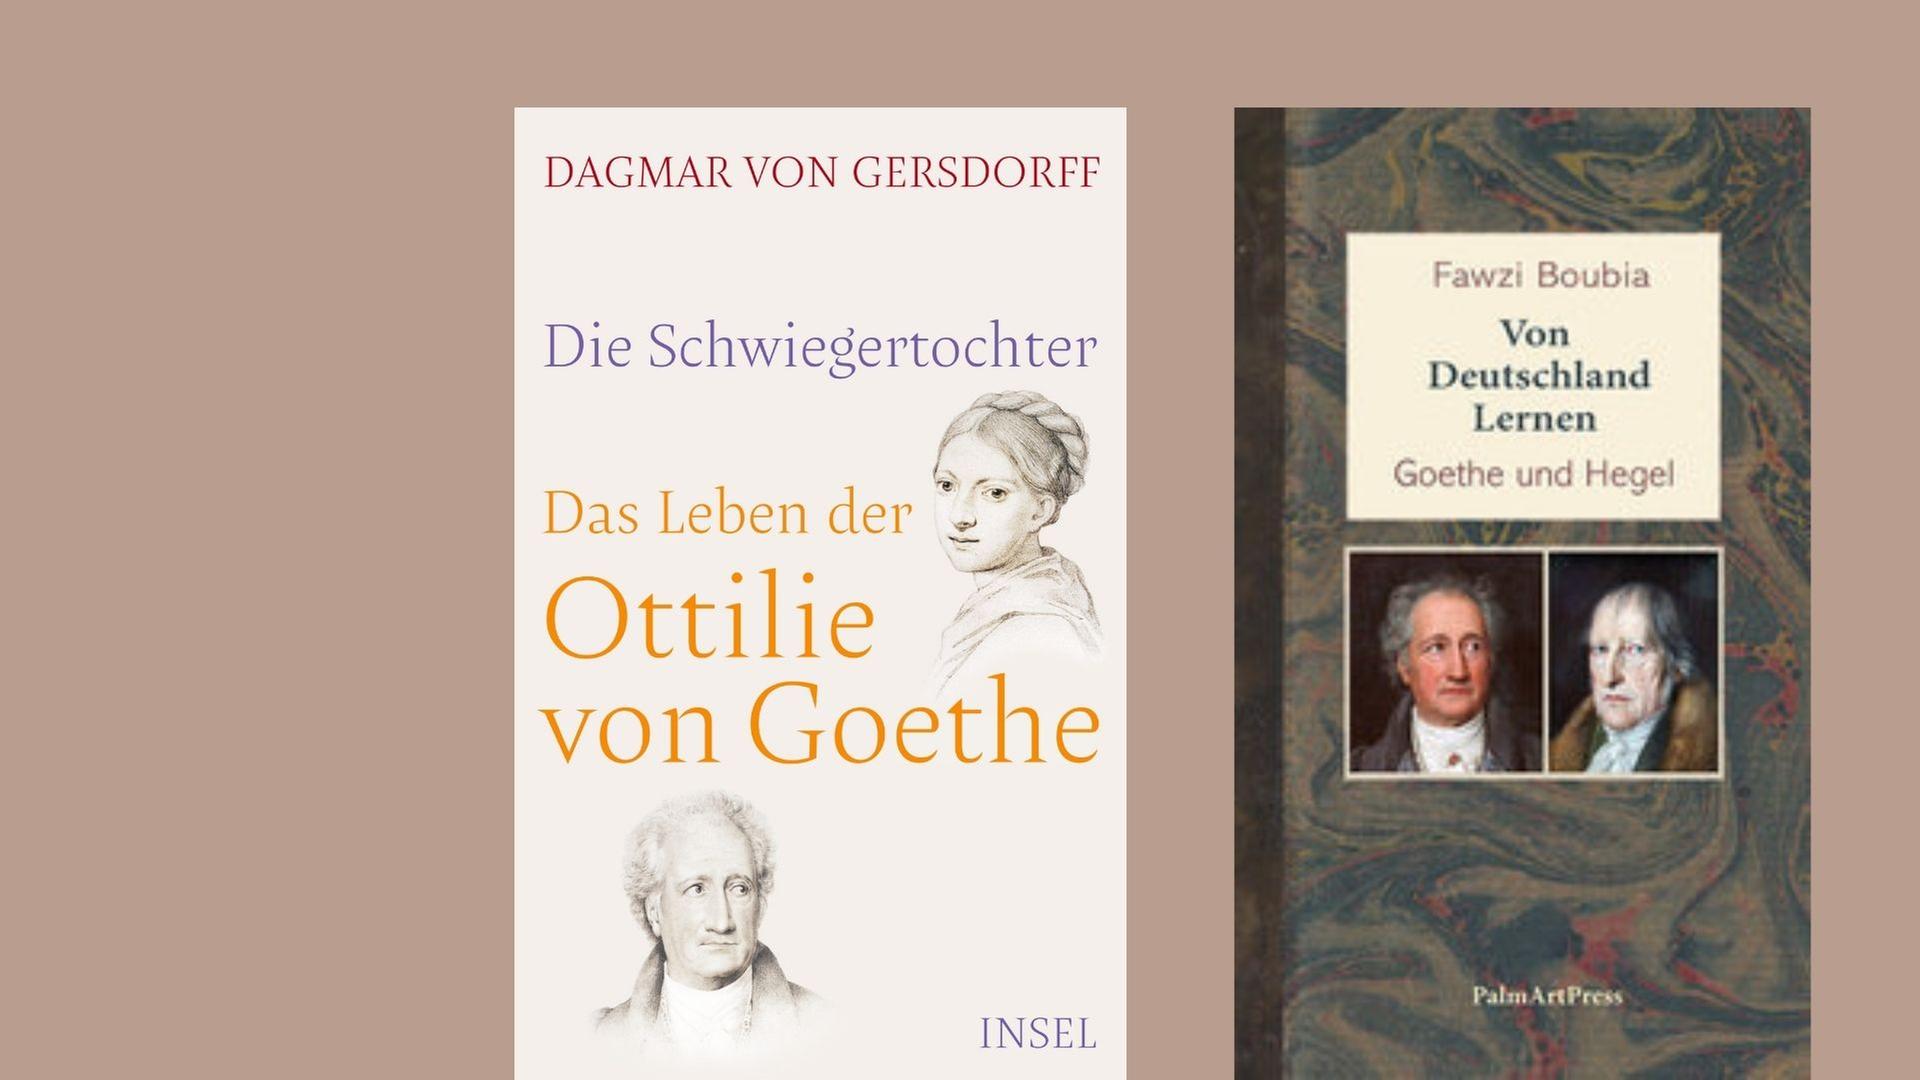 Das letzte Wort hat Goethe - Dagmar von Gersdorff: „Die Schwiegertochter. Das Leben der Ottilie von Goethe“ und Fawzi Boubia: „Von Deutschland lernen. Goethe und Hegel“